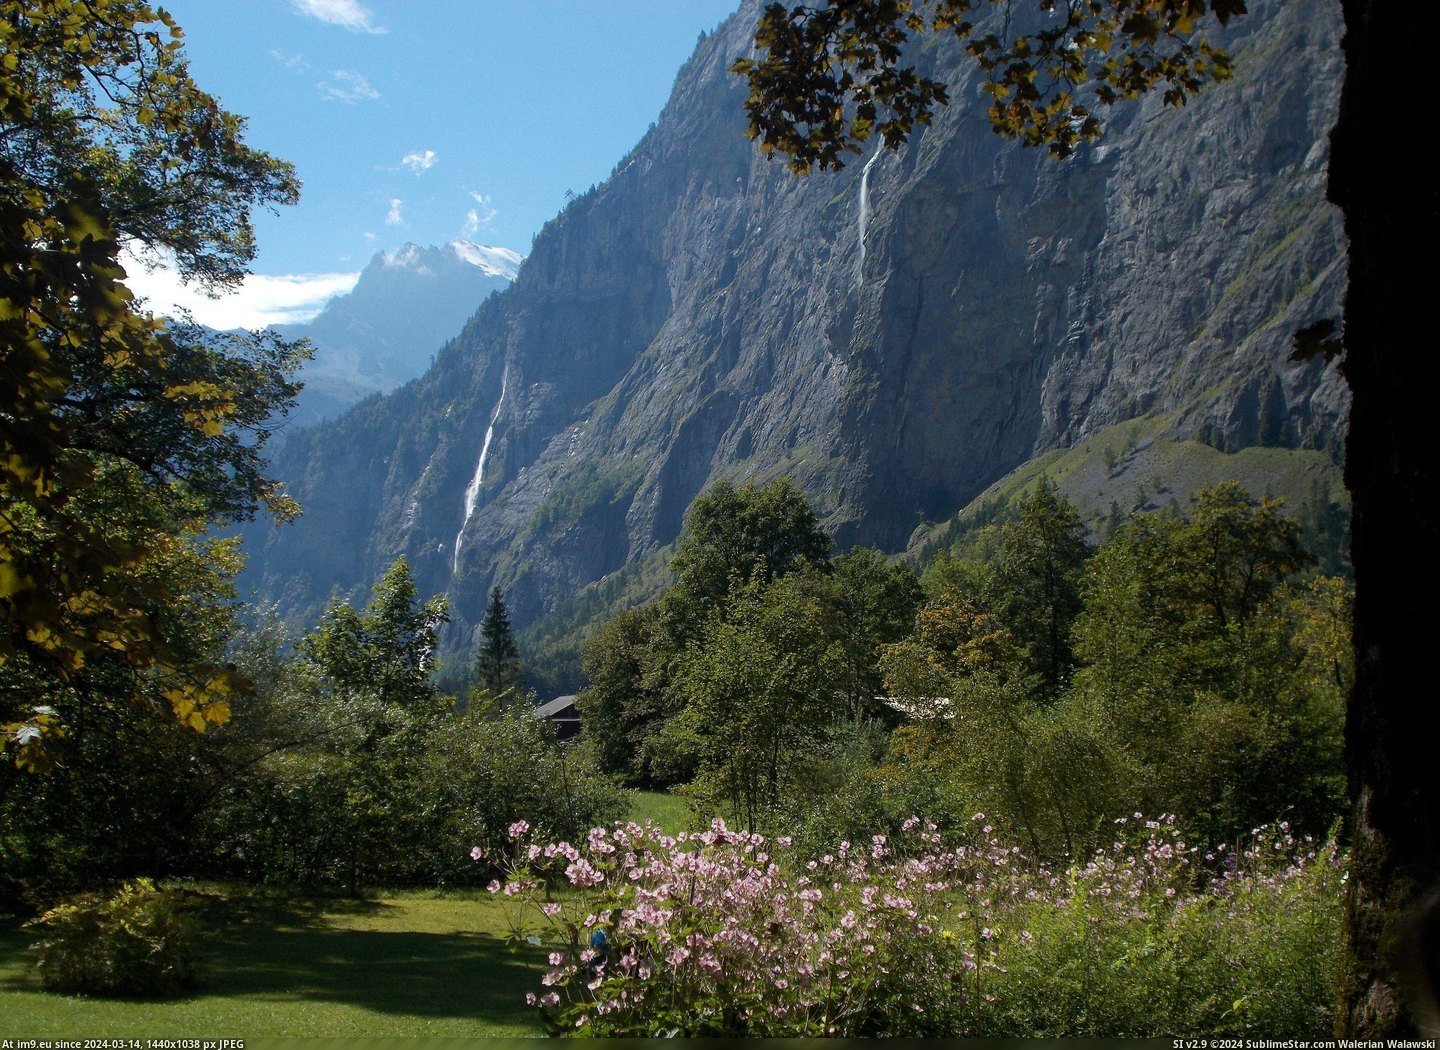 #Europe #Valley #Switzerland #Tolkien #Inpisration #Waterfalls #Traveling #Lauterbrunnen [Earthporn] Lauterbrunnen Valley, Switzerland taken while traveling Europe. A valley of 74 waterfalls and Tolkien's inpisration  Pic. (Bild von album My r/EARTHPORN favs))